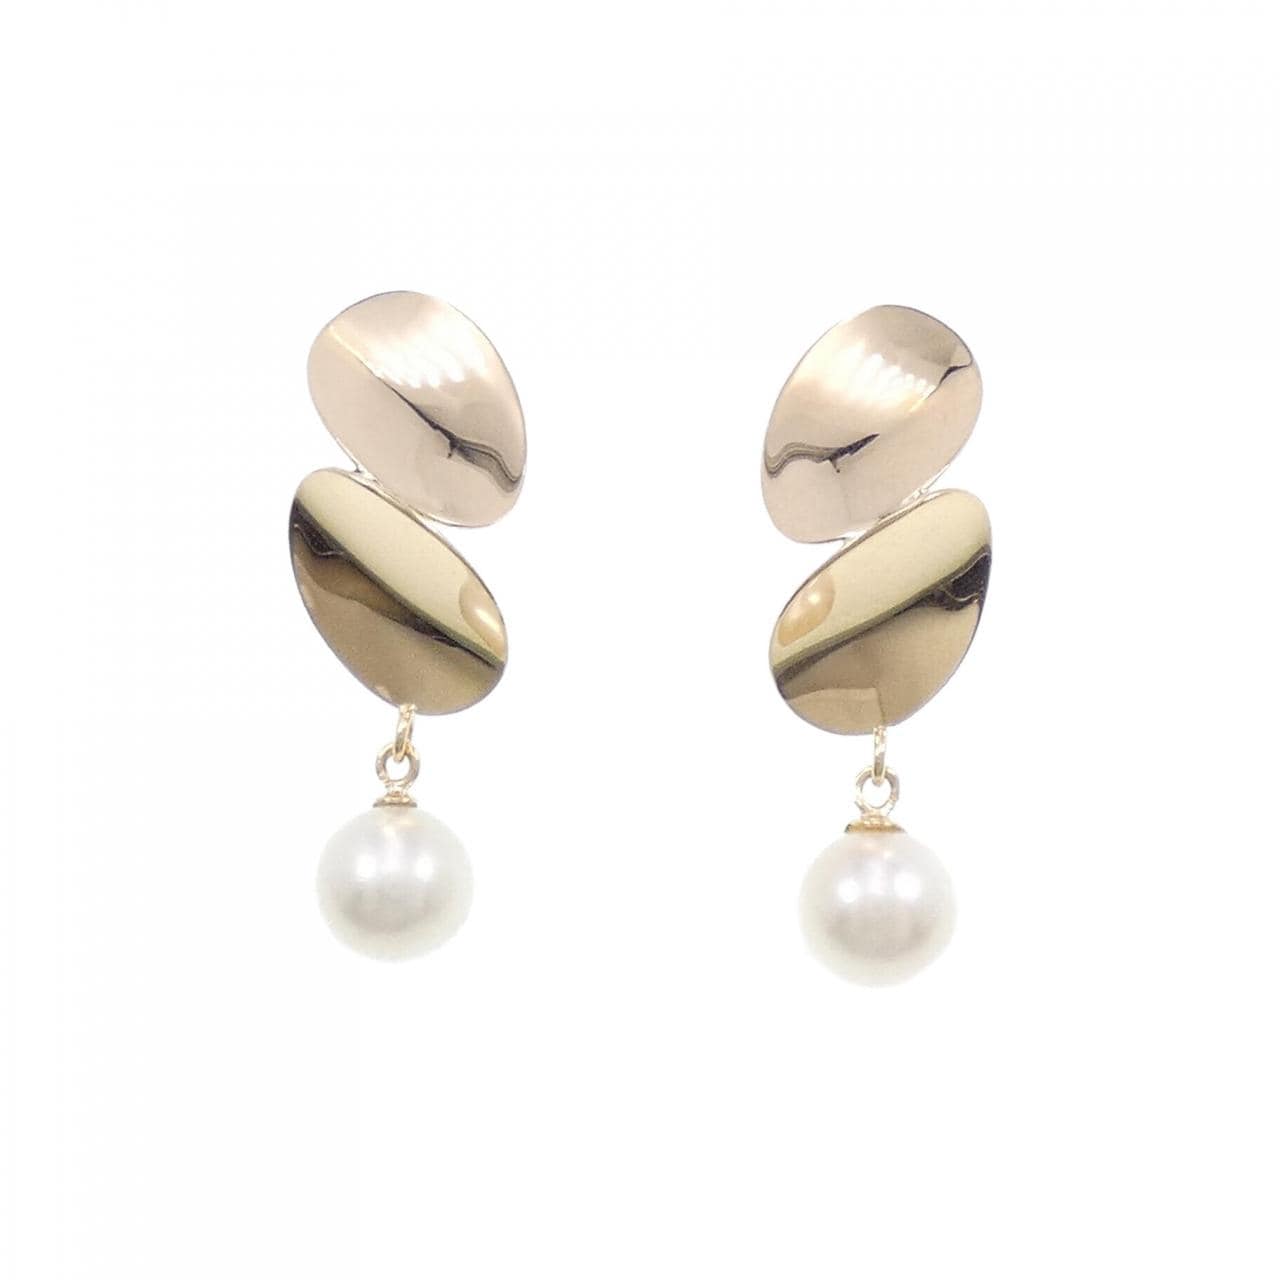 K18YG Akoya pearl earrings 7mm